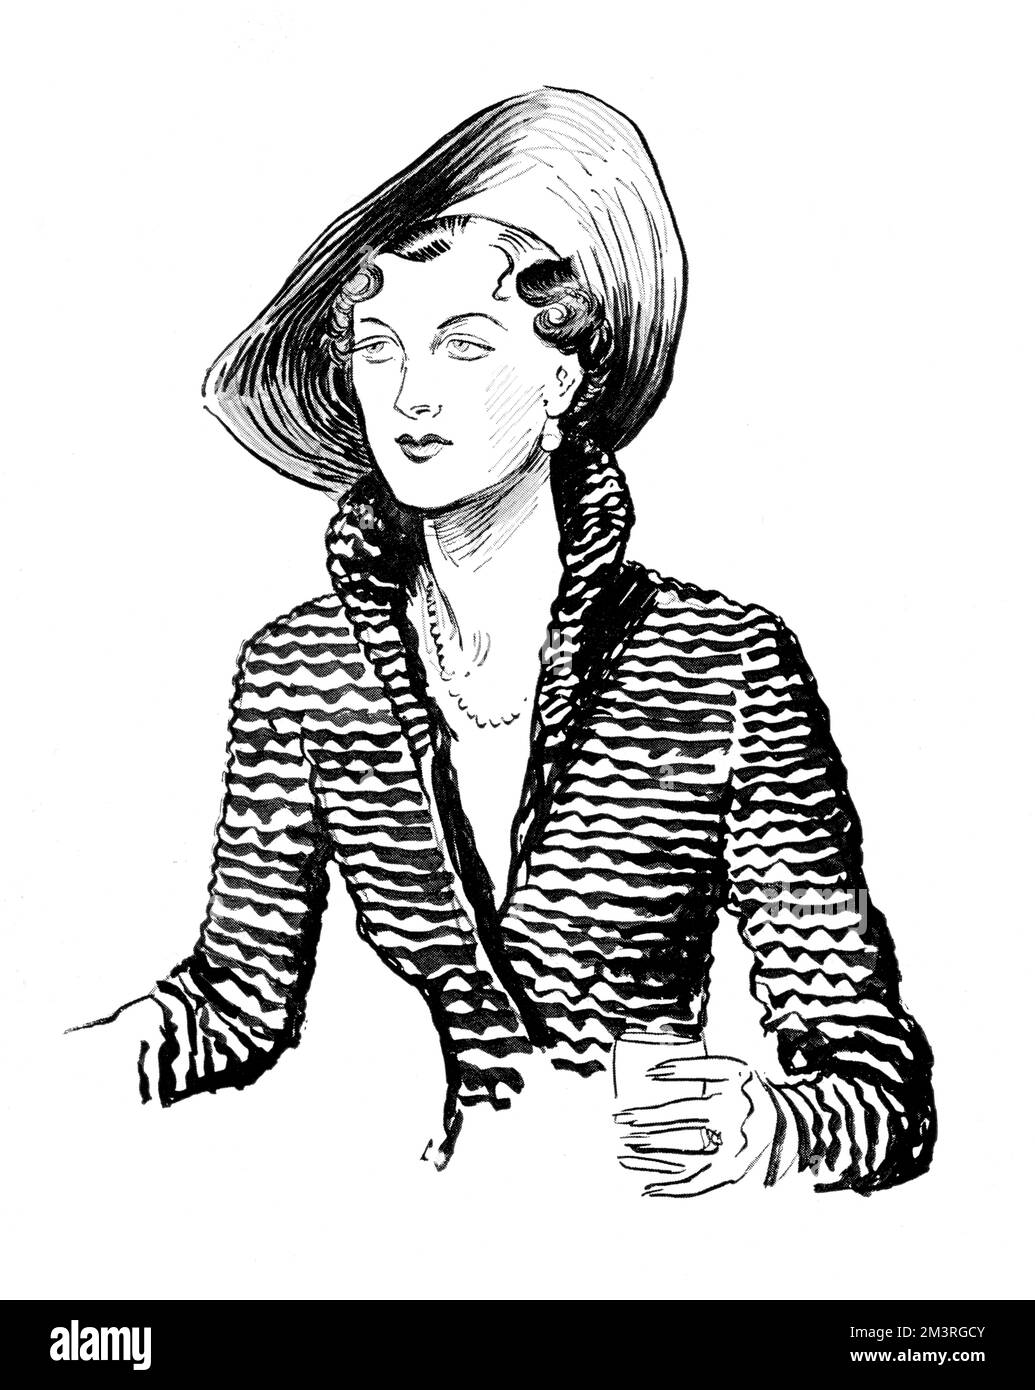 Mme James Beck, socialite et fille de l'une des célèbres sœurs Wyndham peintes par Sargent, photographiée dans un costume noir « de matière matelassée amusante de Schiaparelli et portant un chapeau de noir » lors d'une soirée cocktail. Date: 1934 Banque D'Images